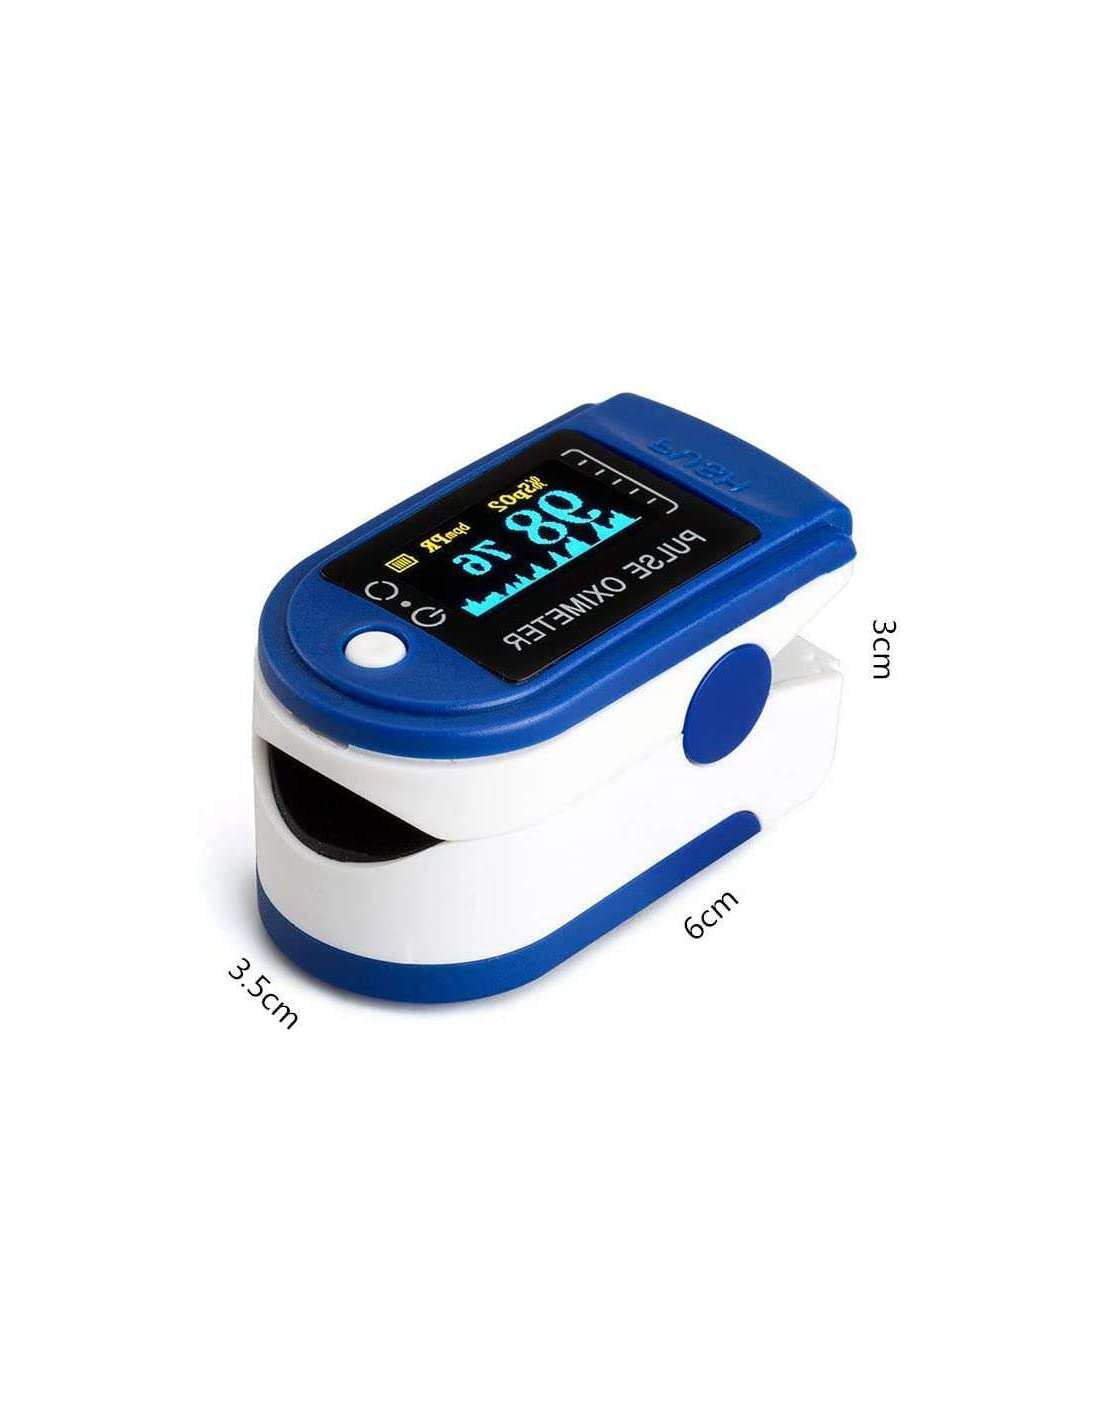 Oxímetro dedo, Pulsioximetro de dedo portátil para mediciones de pulso (PR)  y saturación de oxígeno (SpO2) 